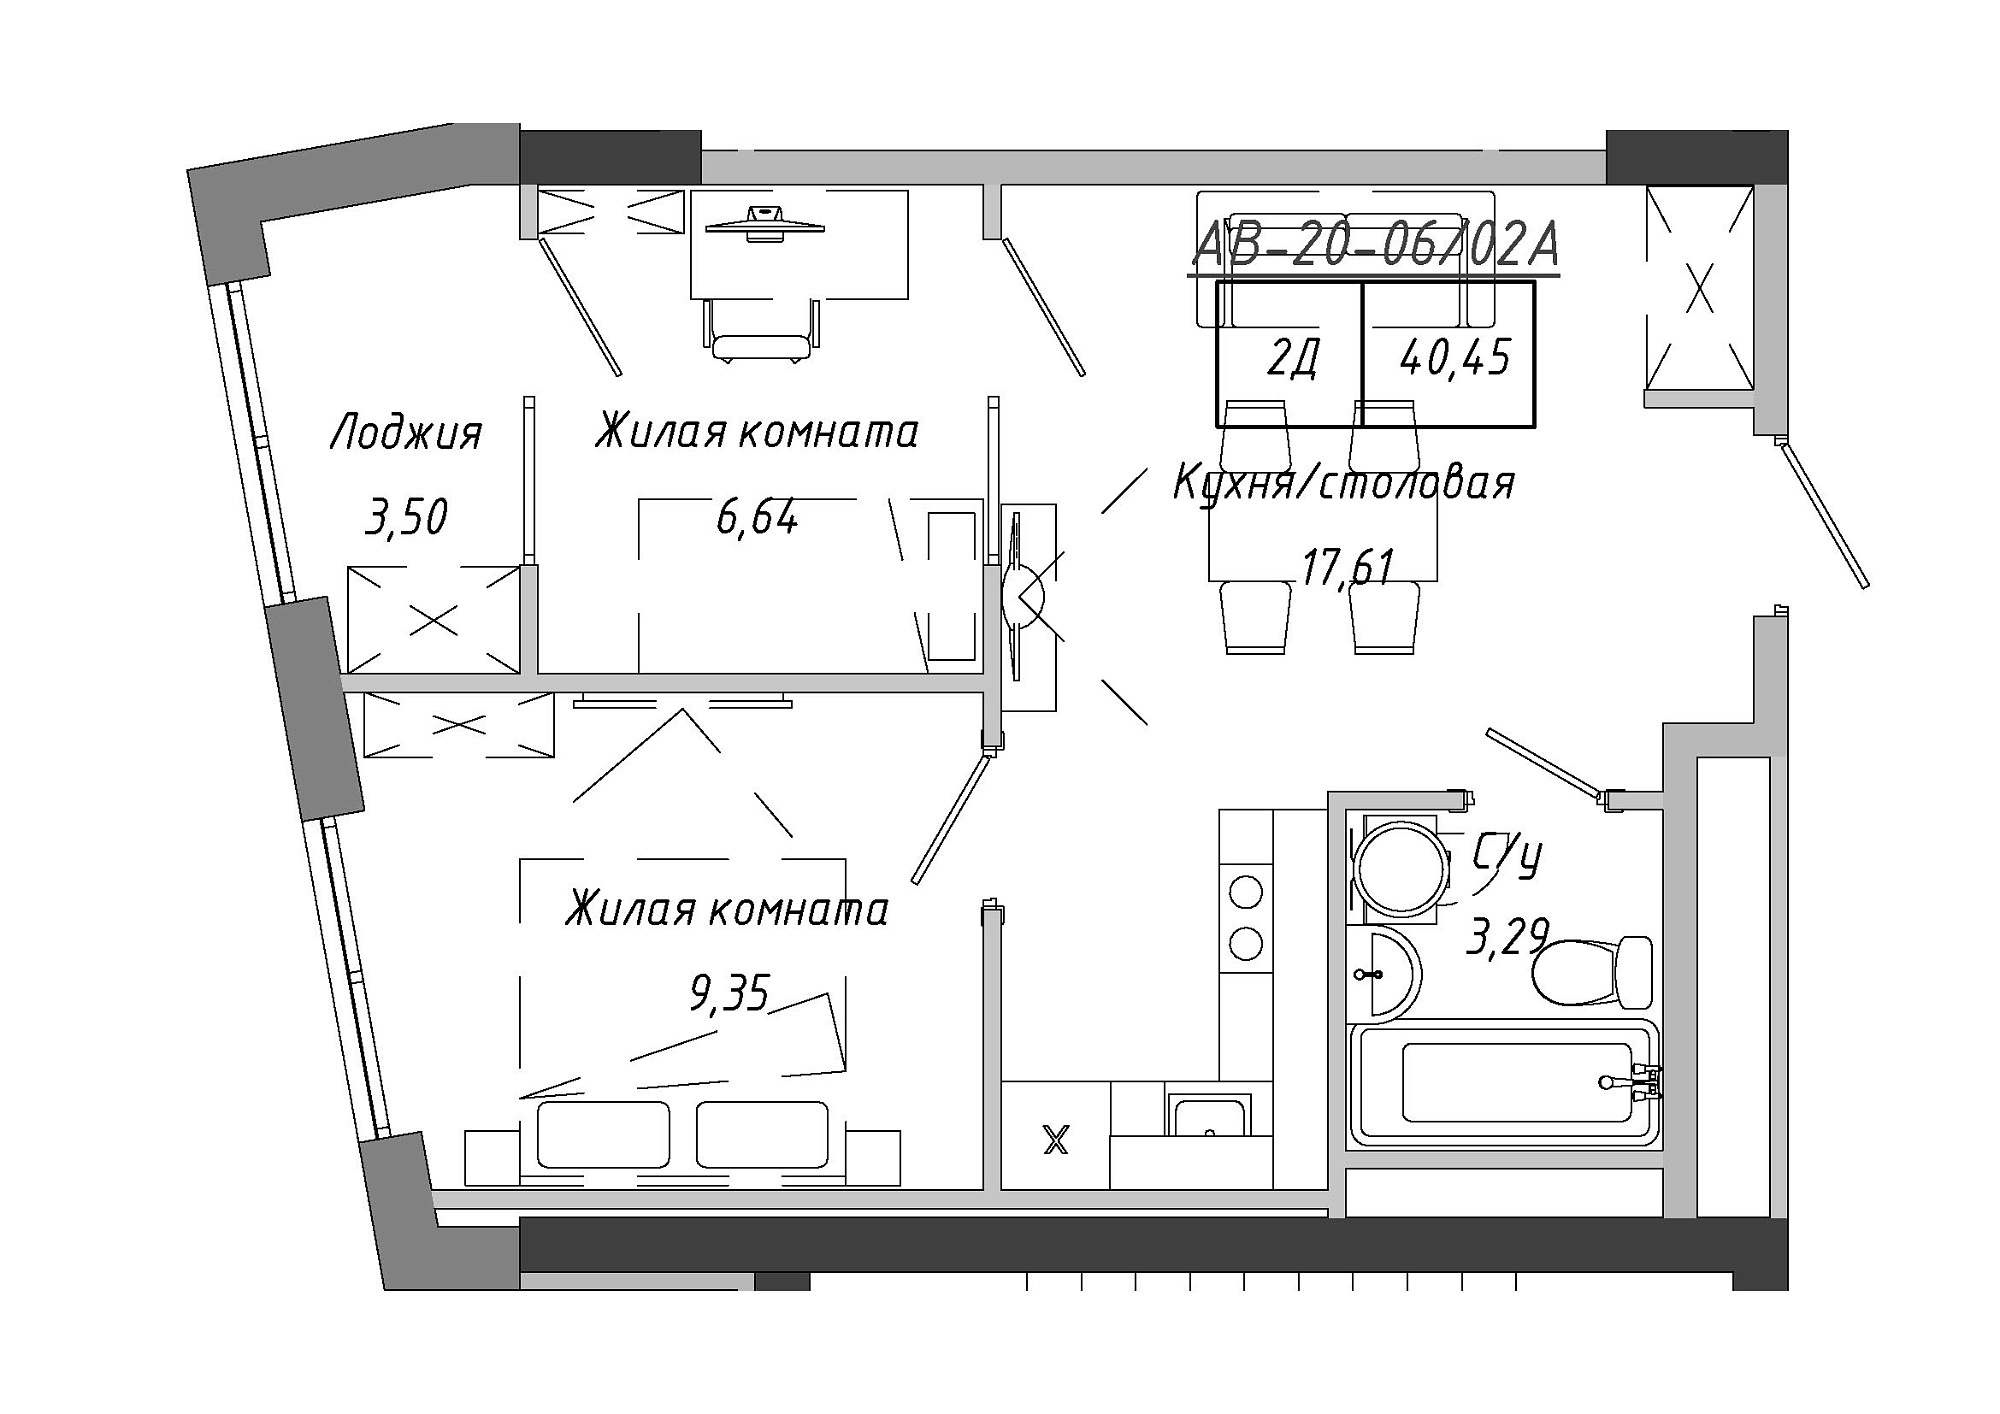 Планировка 2-к квартира площей 41.9м2, AB-20-06/0002а.